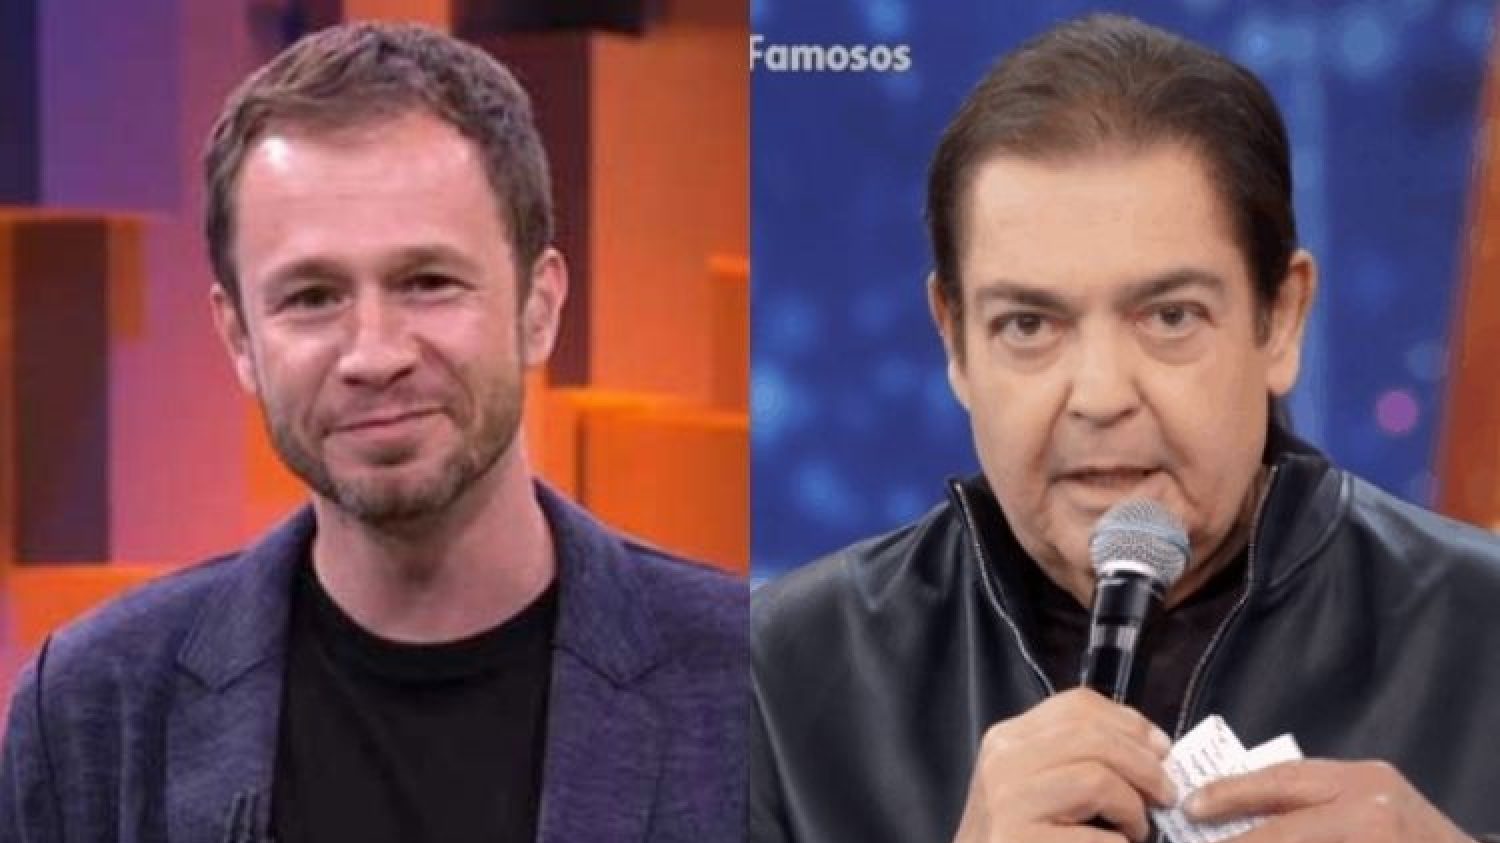 Os apresentadores Tiago Leifert (à esquerda) e Fausto Silva (à direita) (Reprodução / Globo)